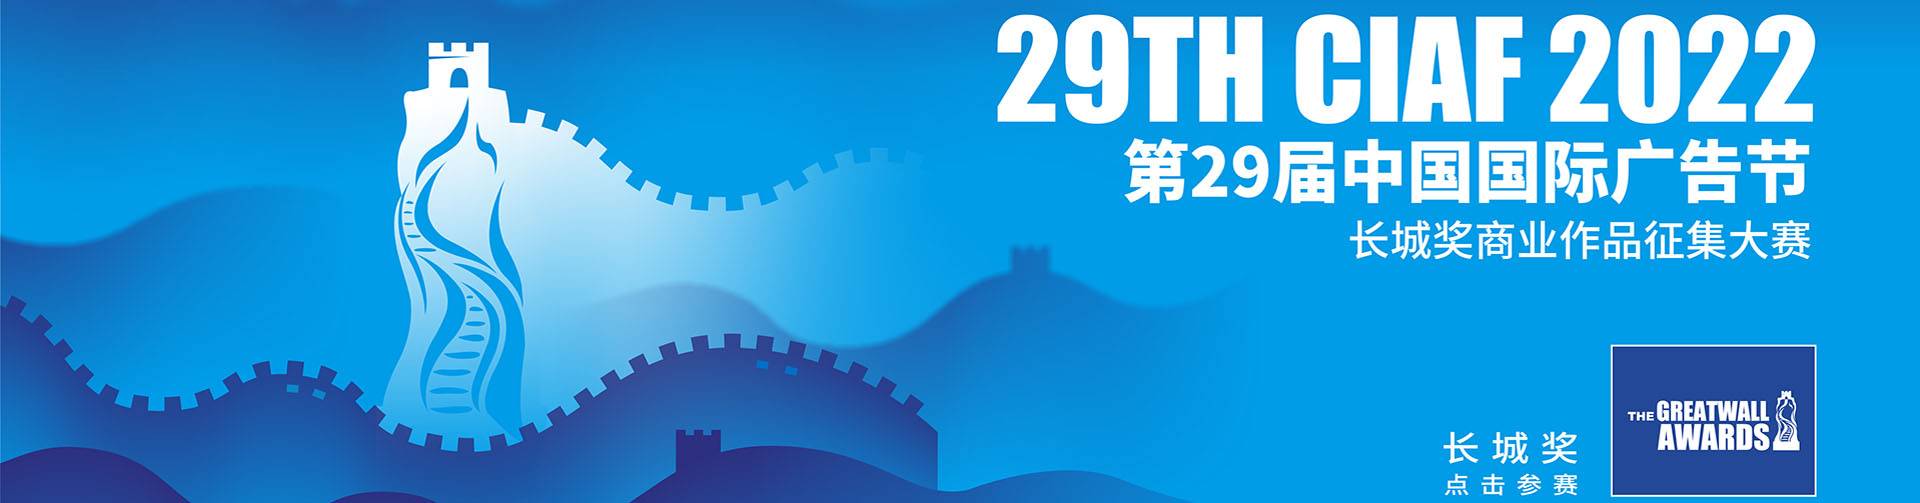 第29届中国国际广告节--长城奖商业作品征集大赛开赛